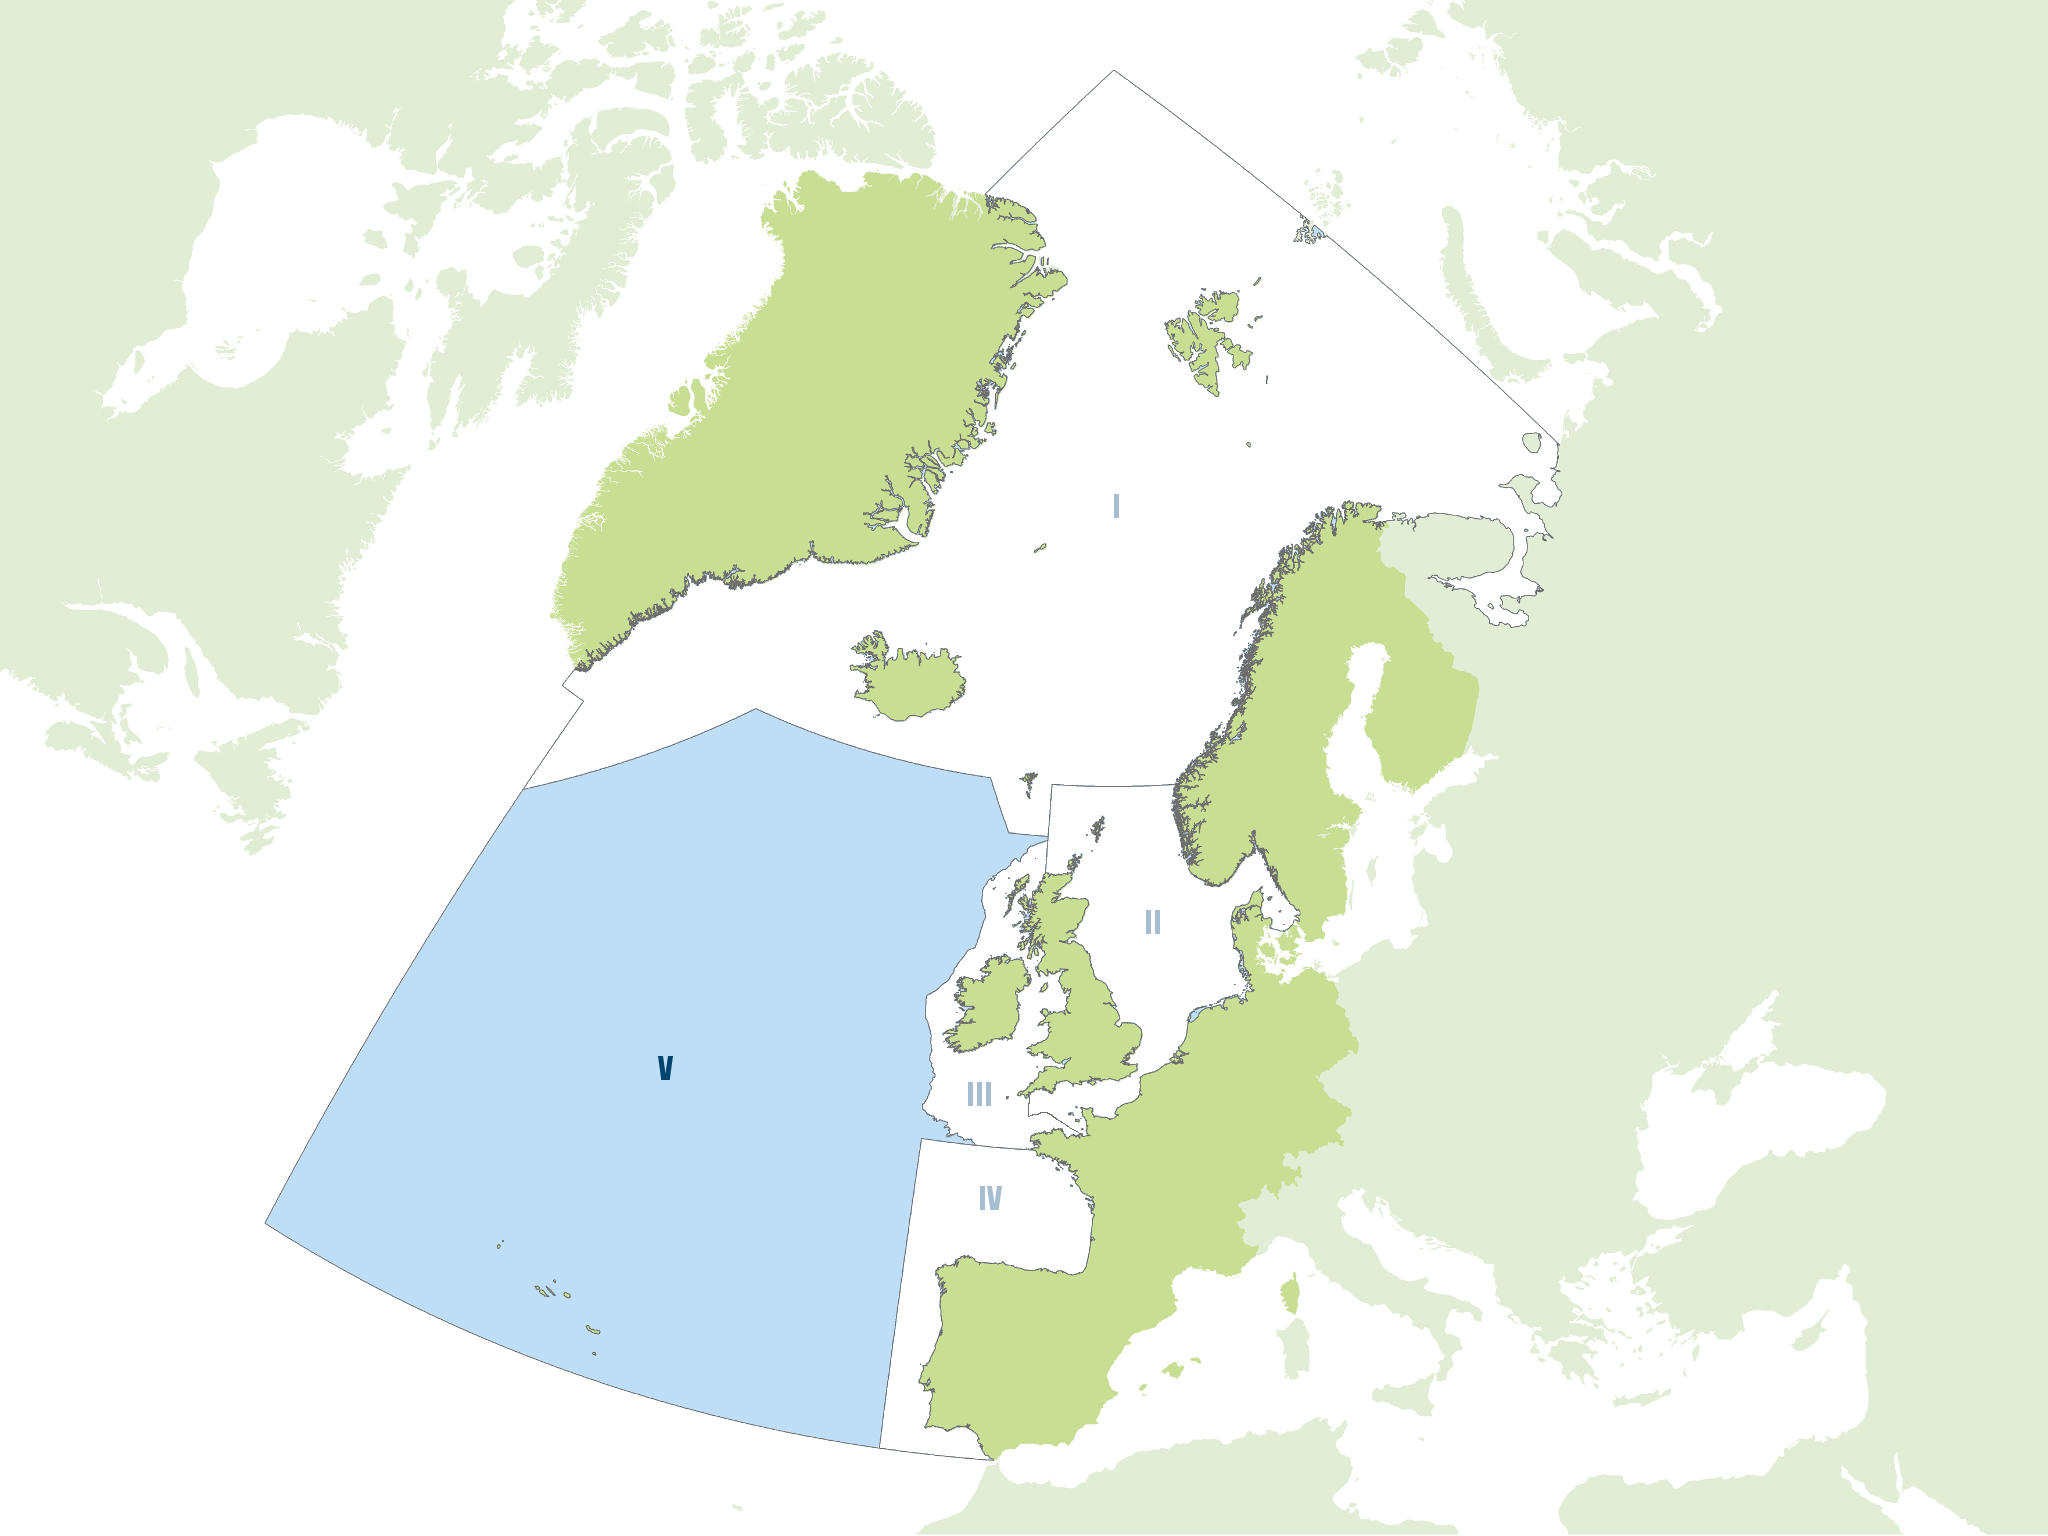 Region V: Wider Atlantic